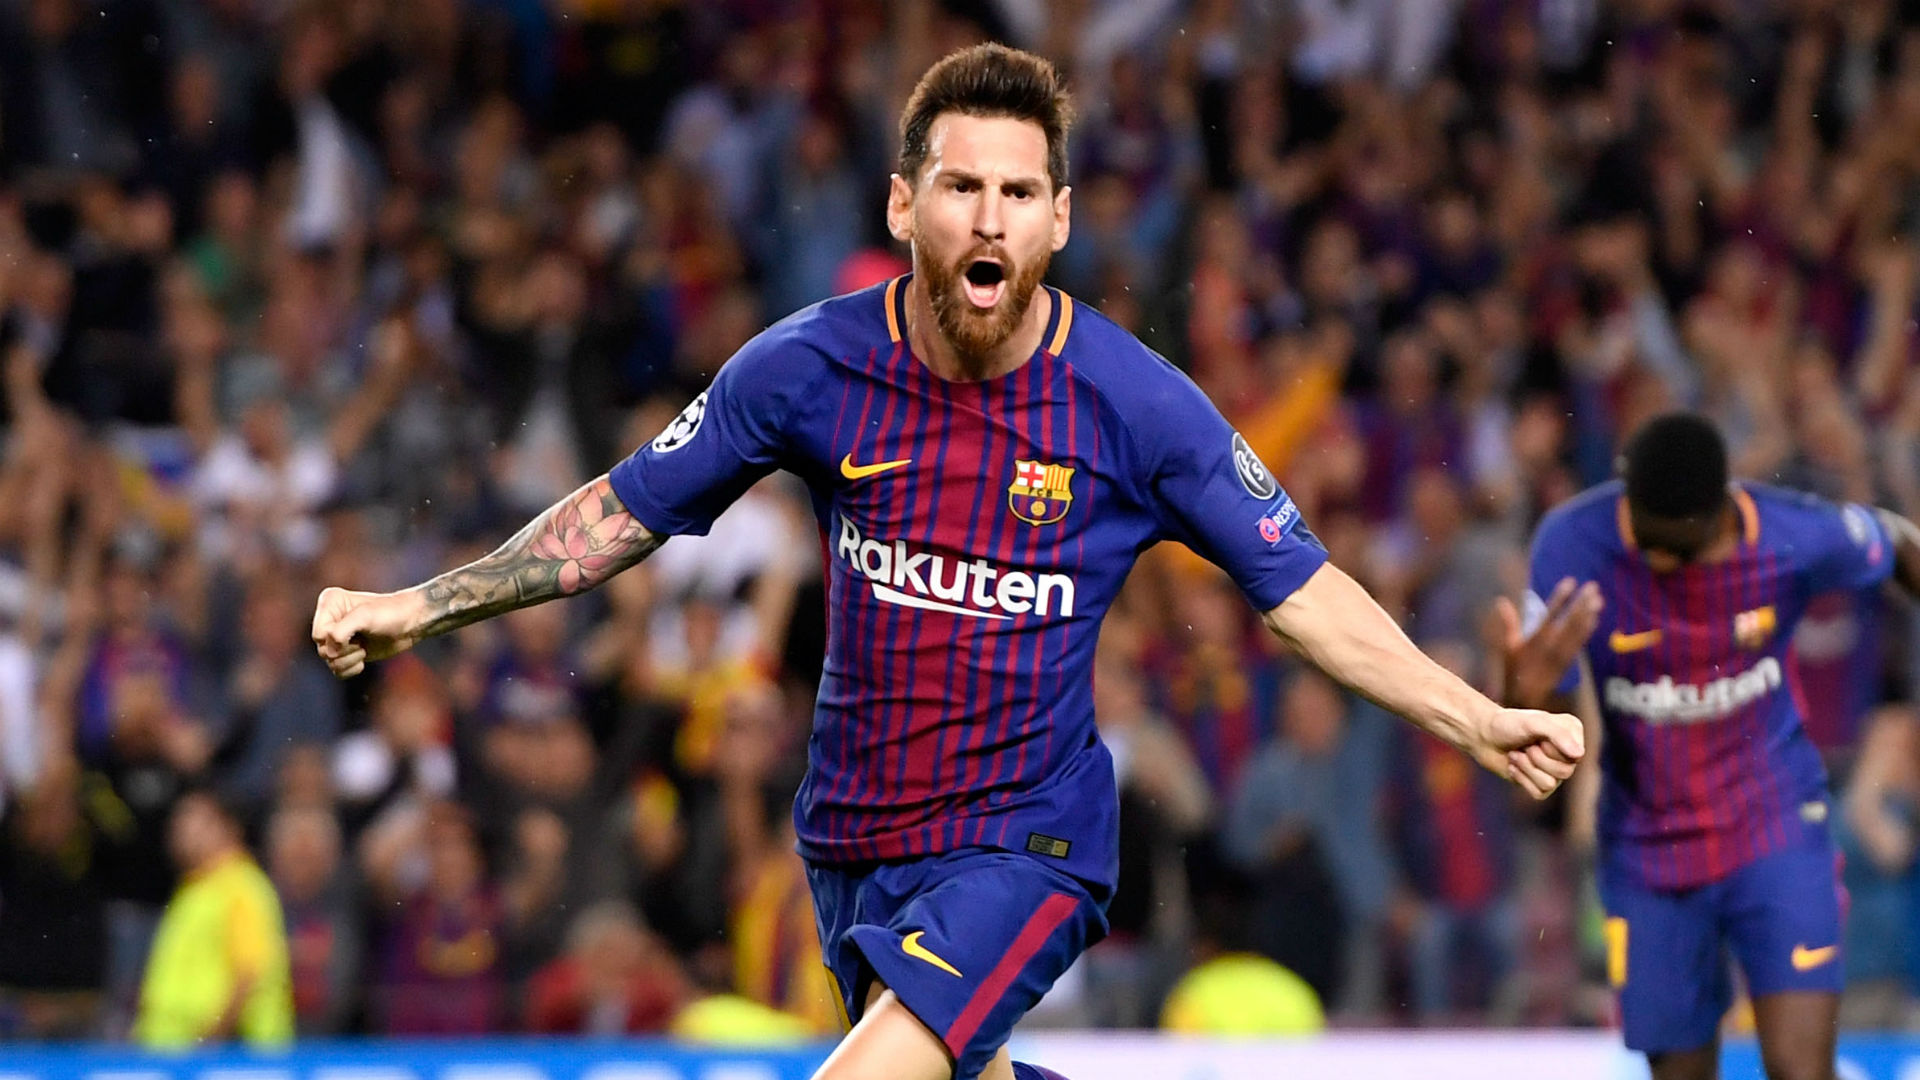 Điểm lại những phát ngôn “cực chất” trong sự nghiệp của Messi